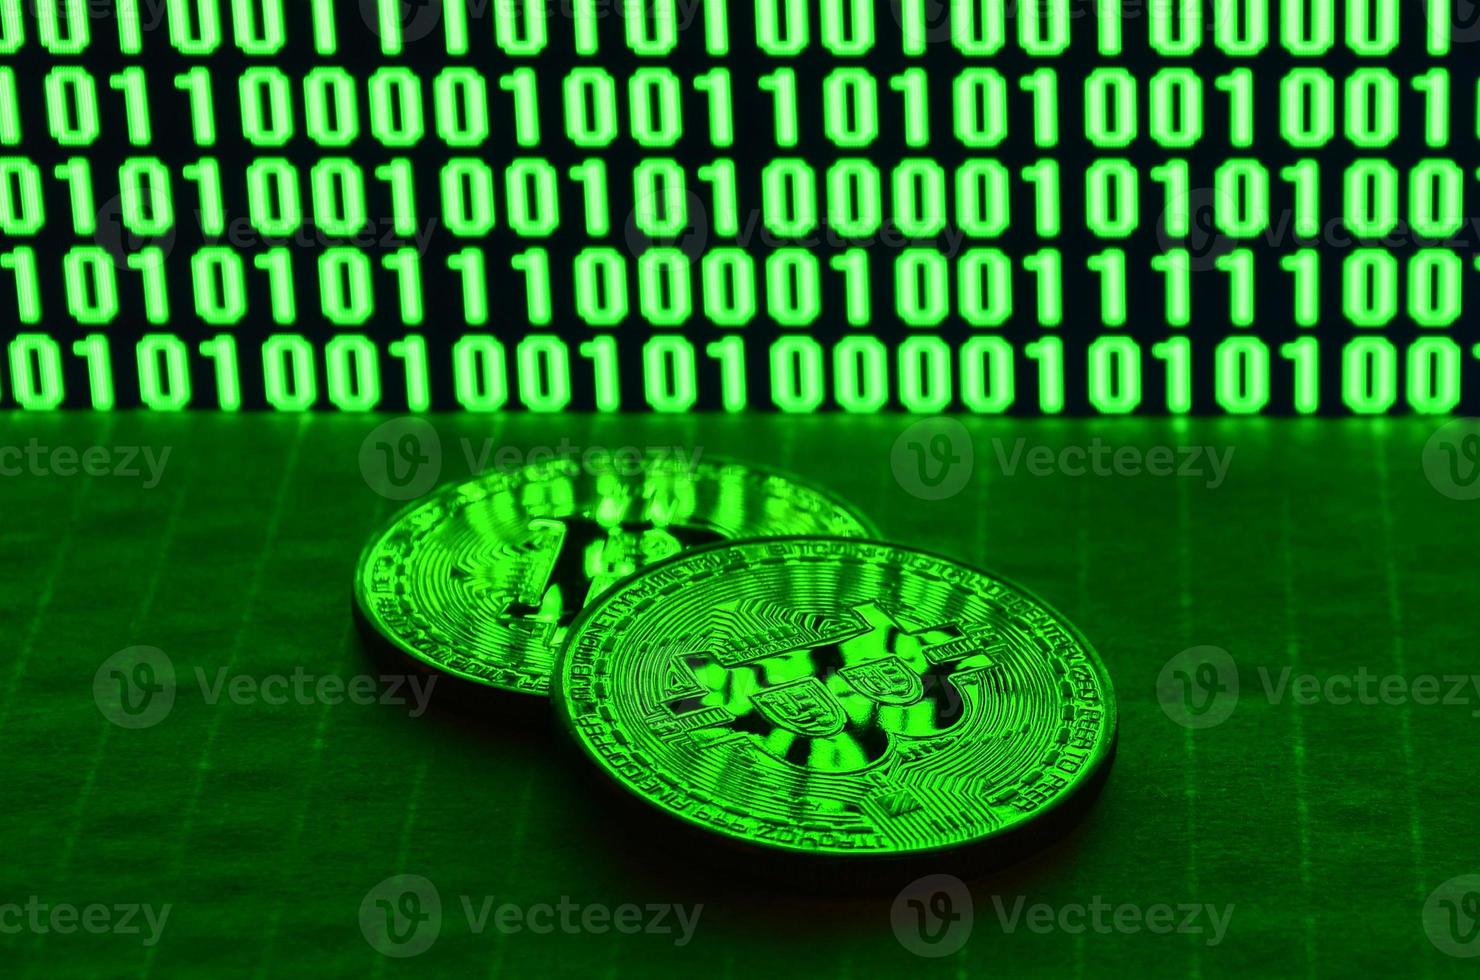 Ein Paar Bitcoins liegt auf einer Kartonoberfläche vor dem Hintergrund eines Monitors, der einen Binärcode aus hellgrünen Nullen und Einsen auf schwarzem Hintergrund darstellt. zurückhaltende Beleuchtung foto